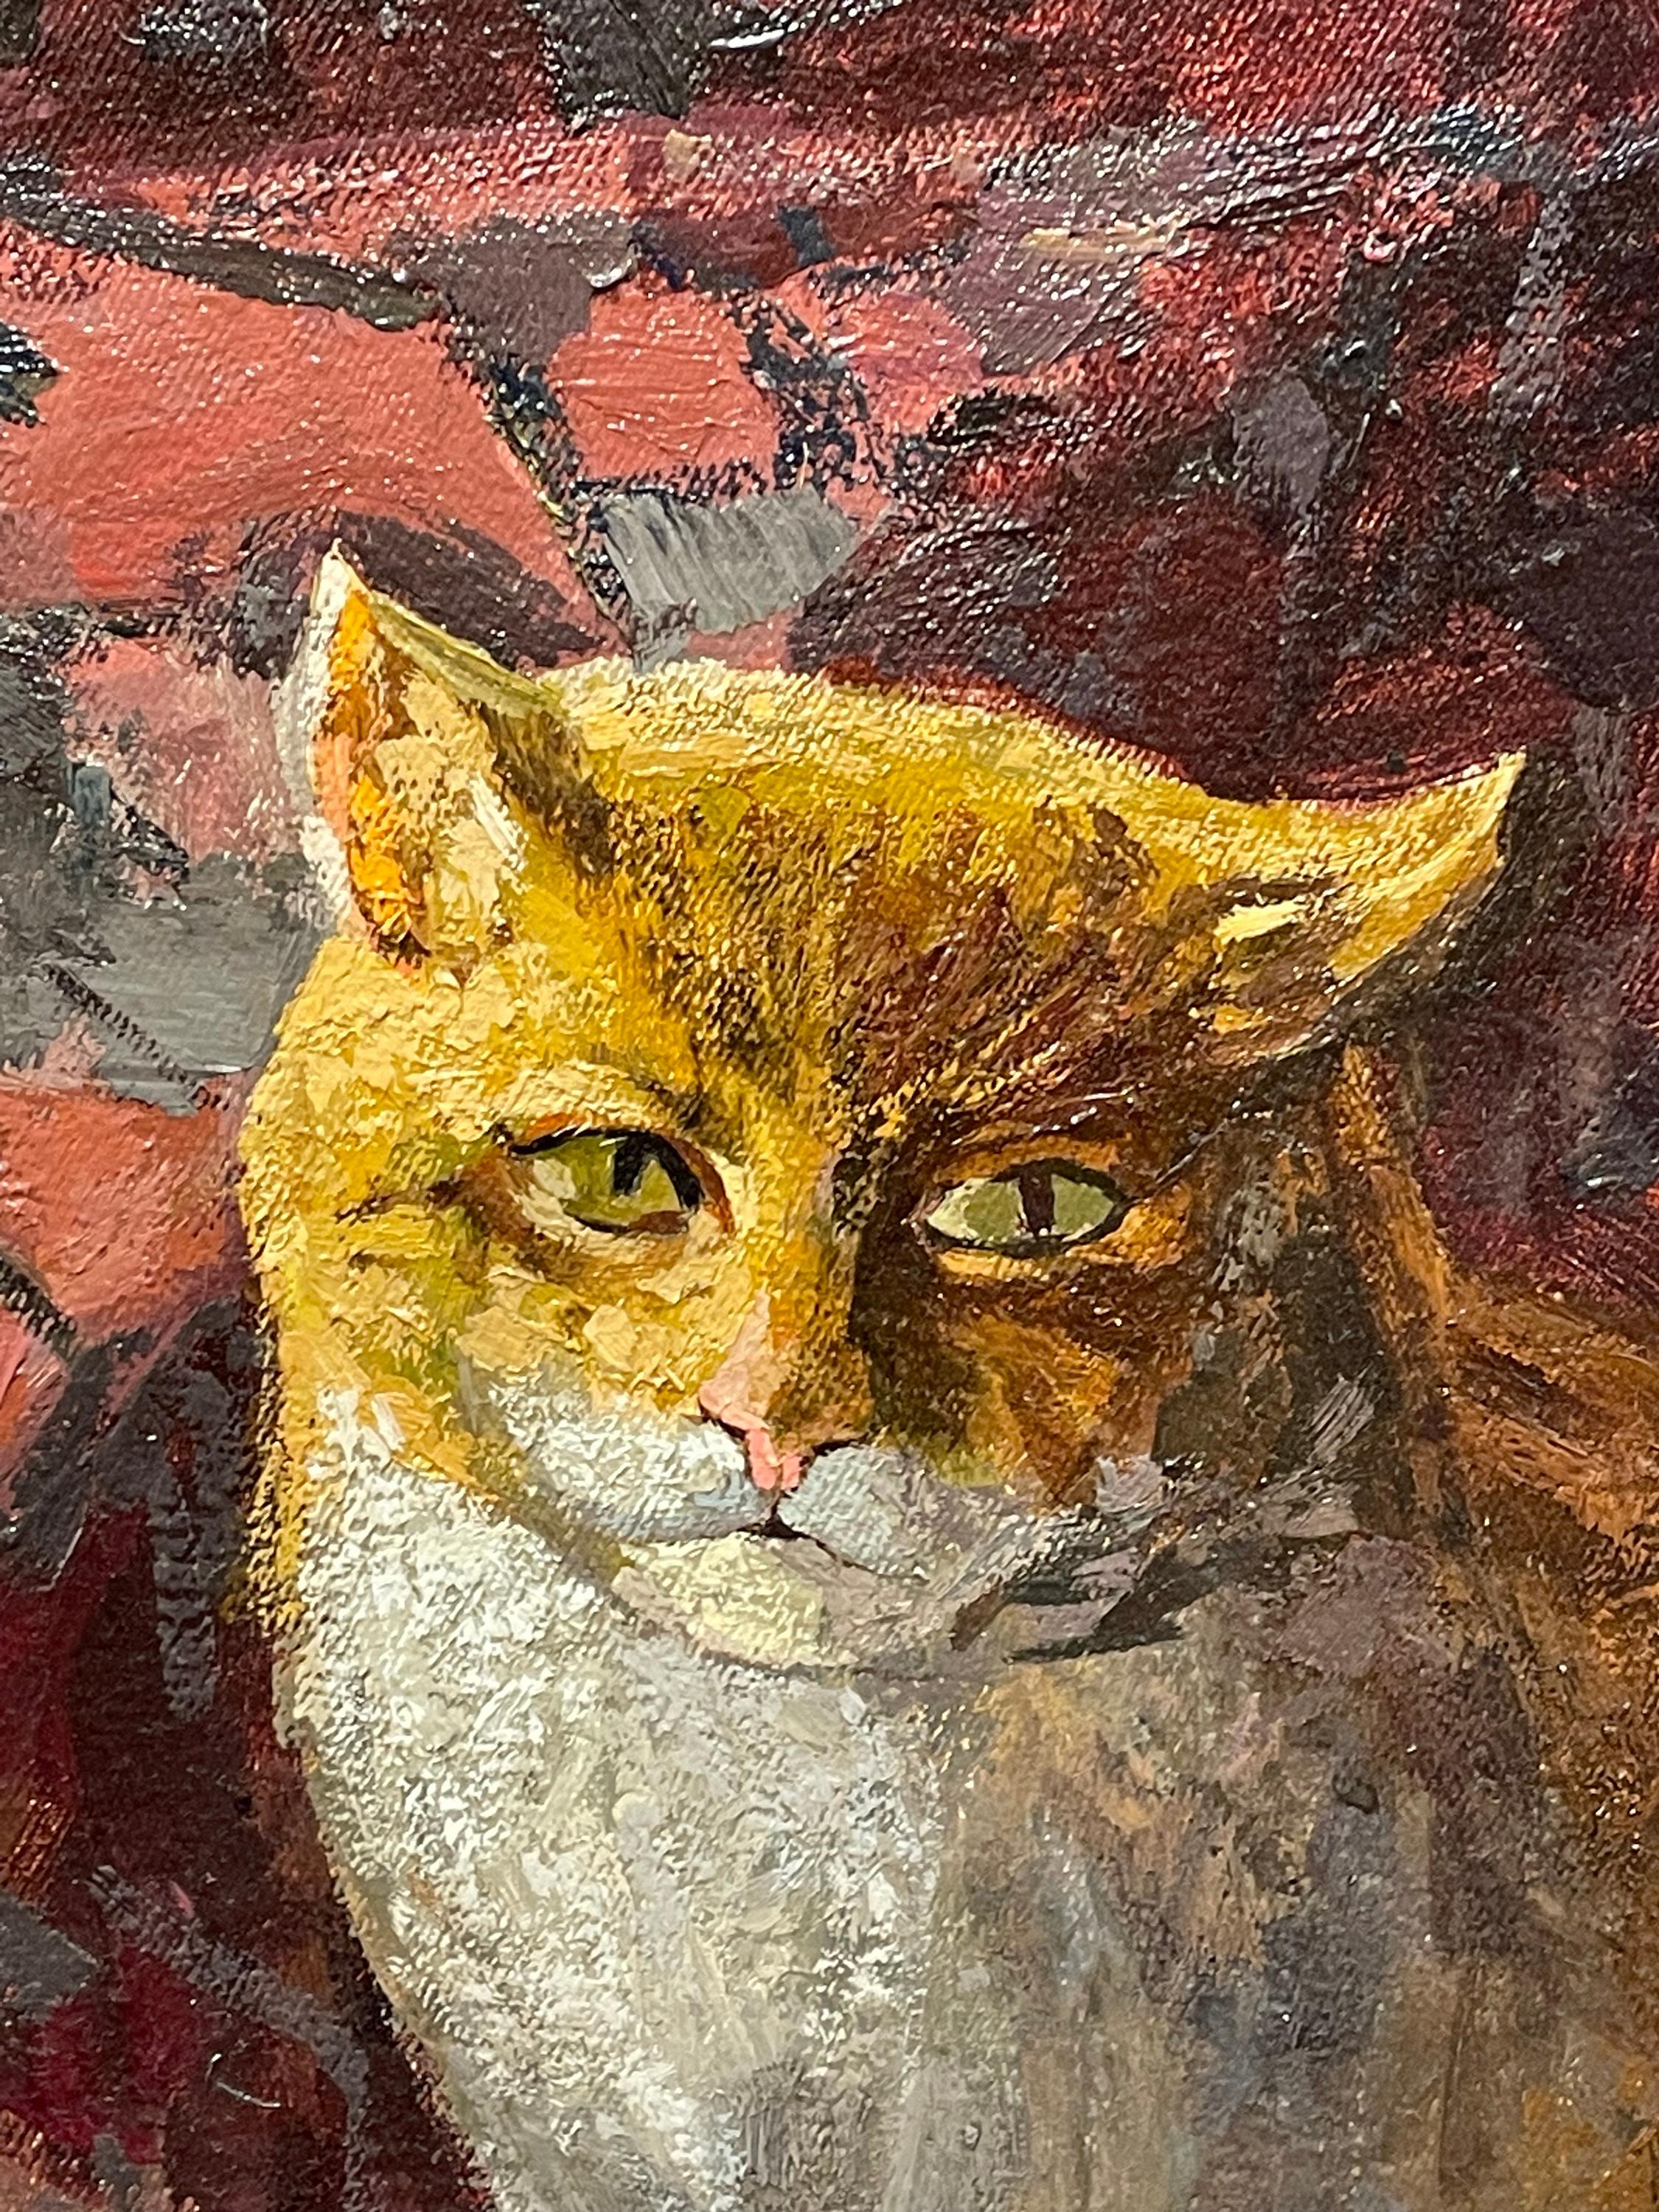 STILL LIFE WITH CAT - Painting by Vladimir Litveenov